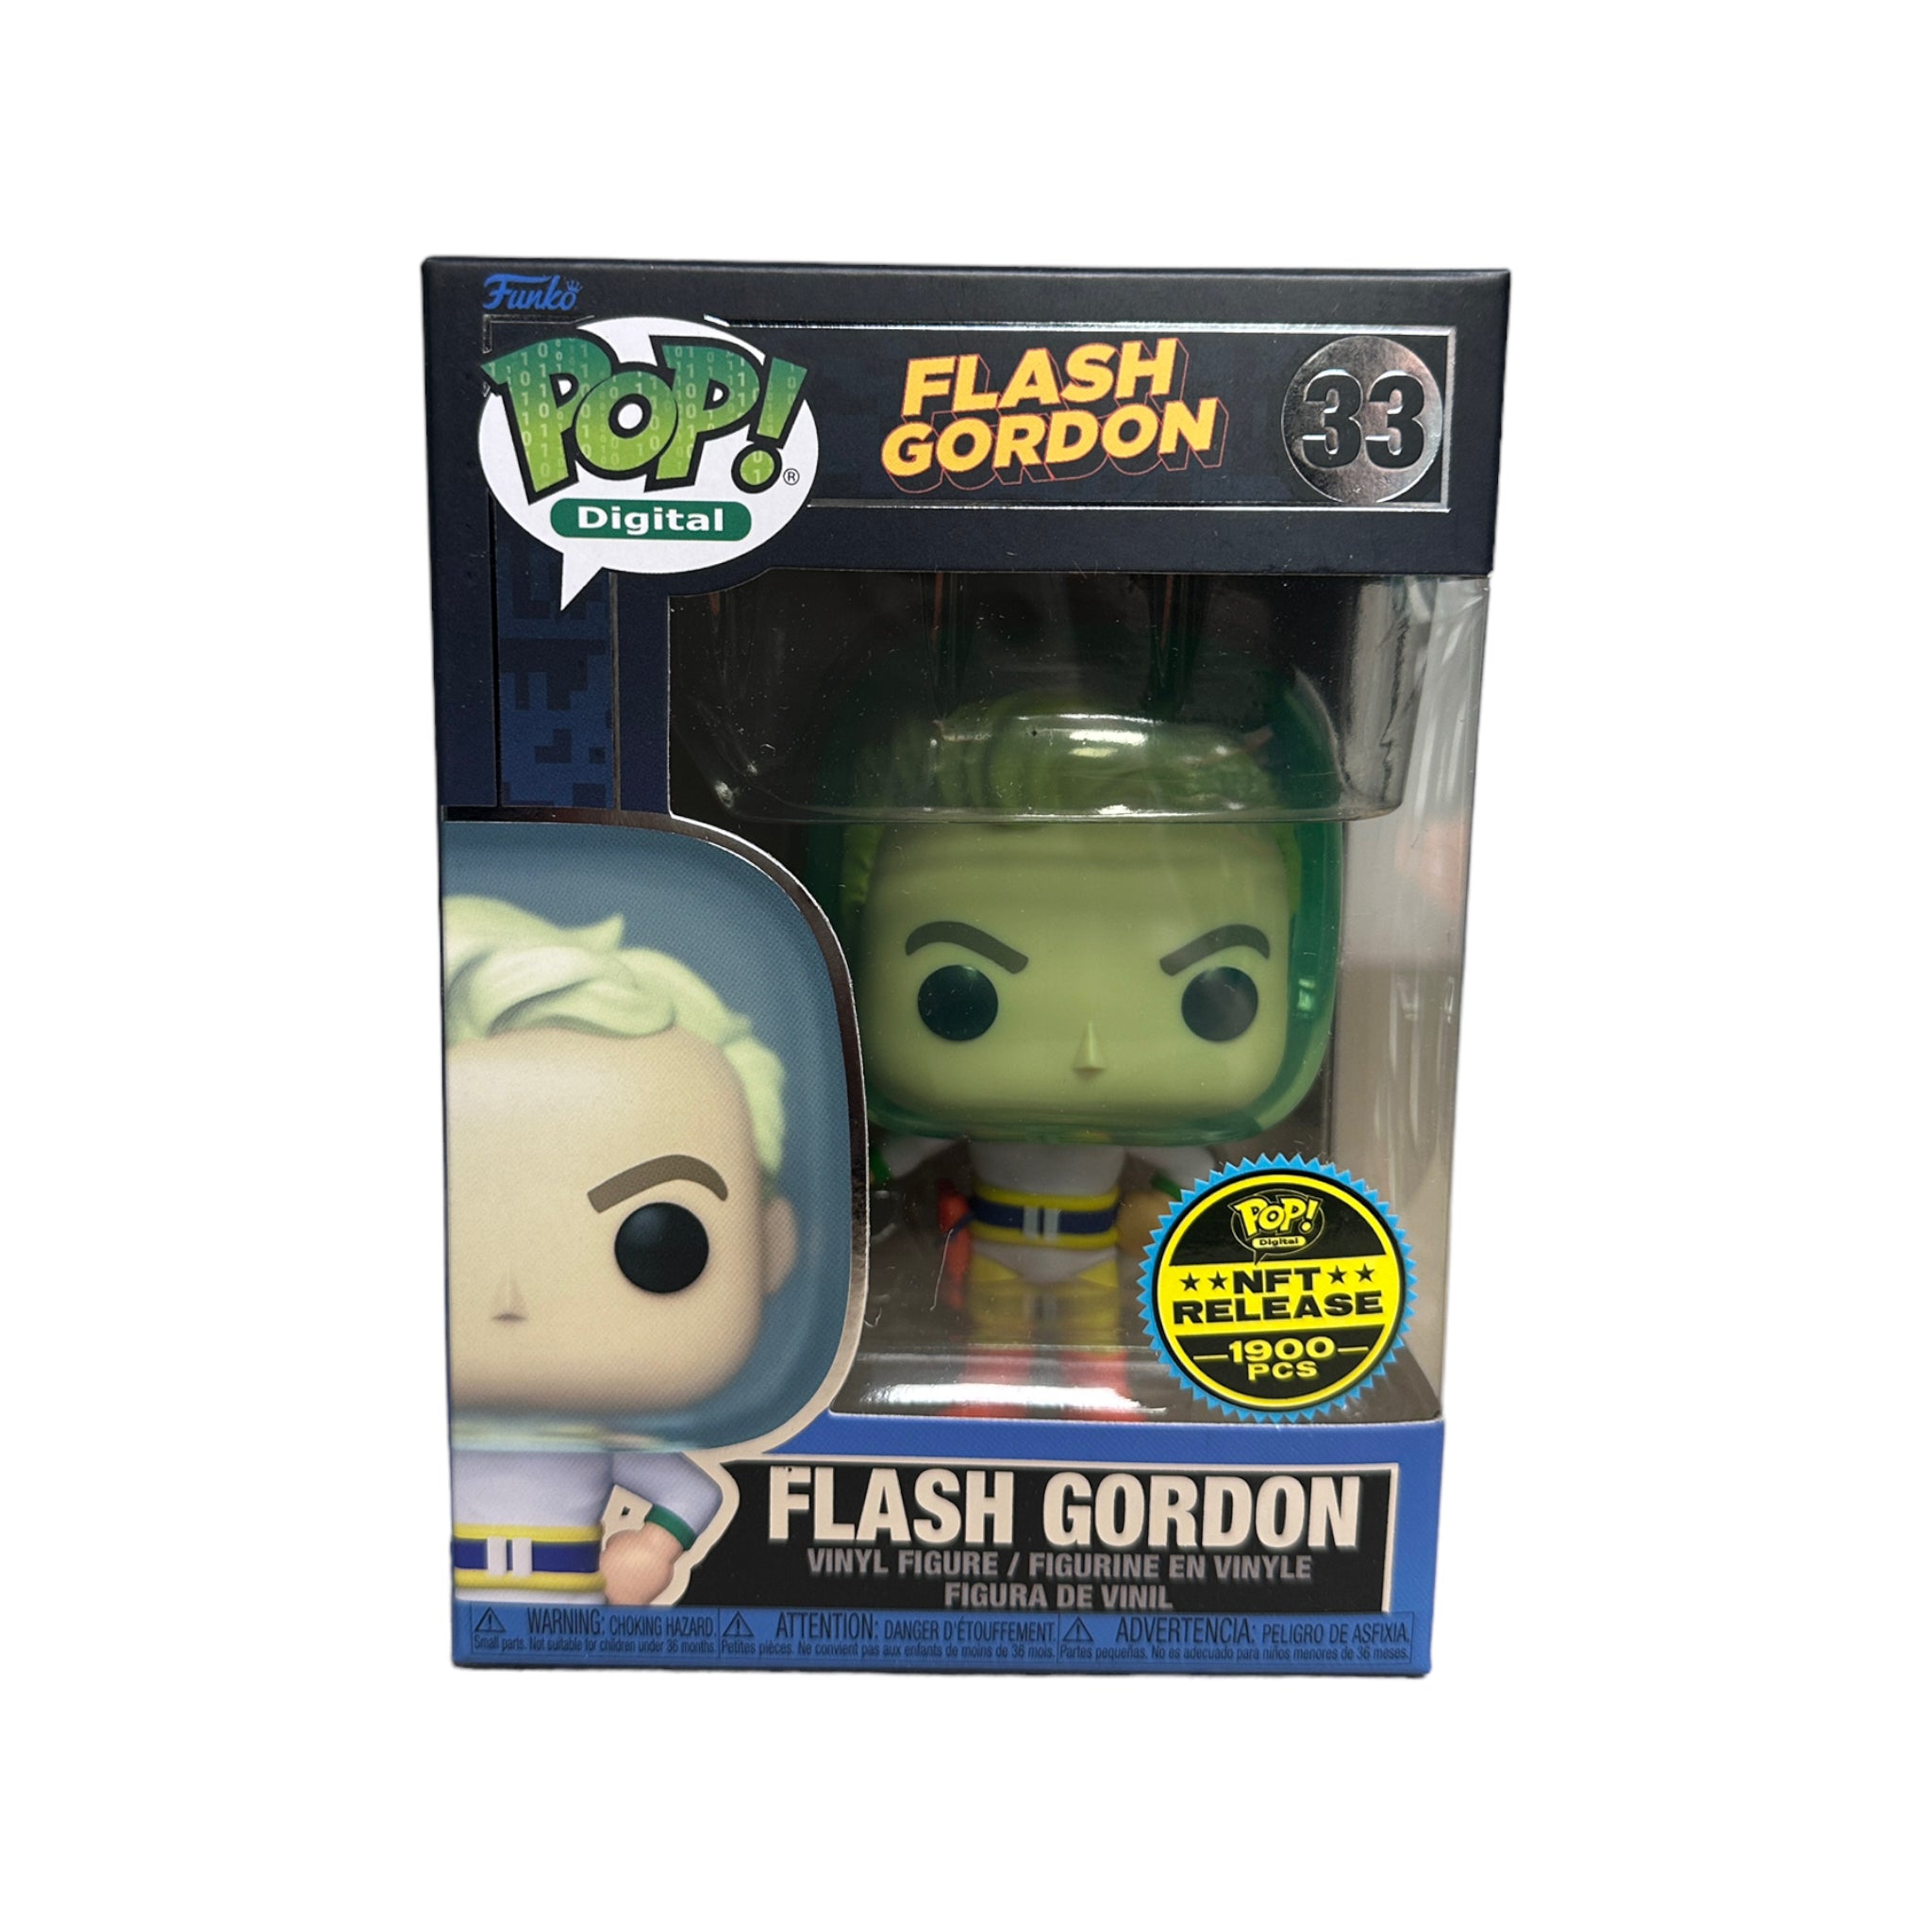 Flash Gordon #33 Funko Pop! - Flash Gordon - NFT Release Exclusive LE1900 Pcs - Condition 8/10